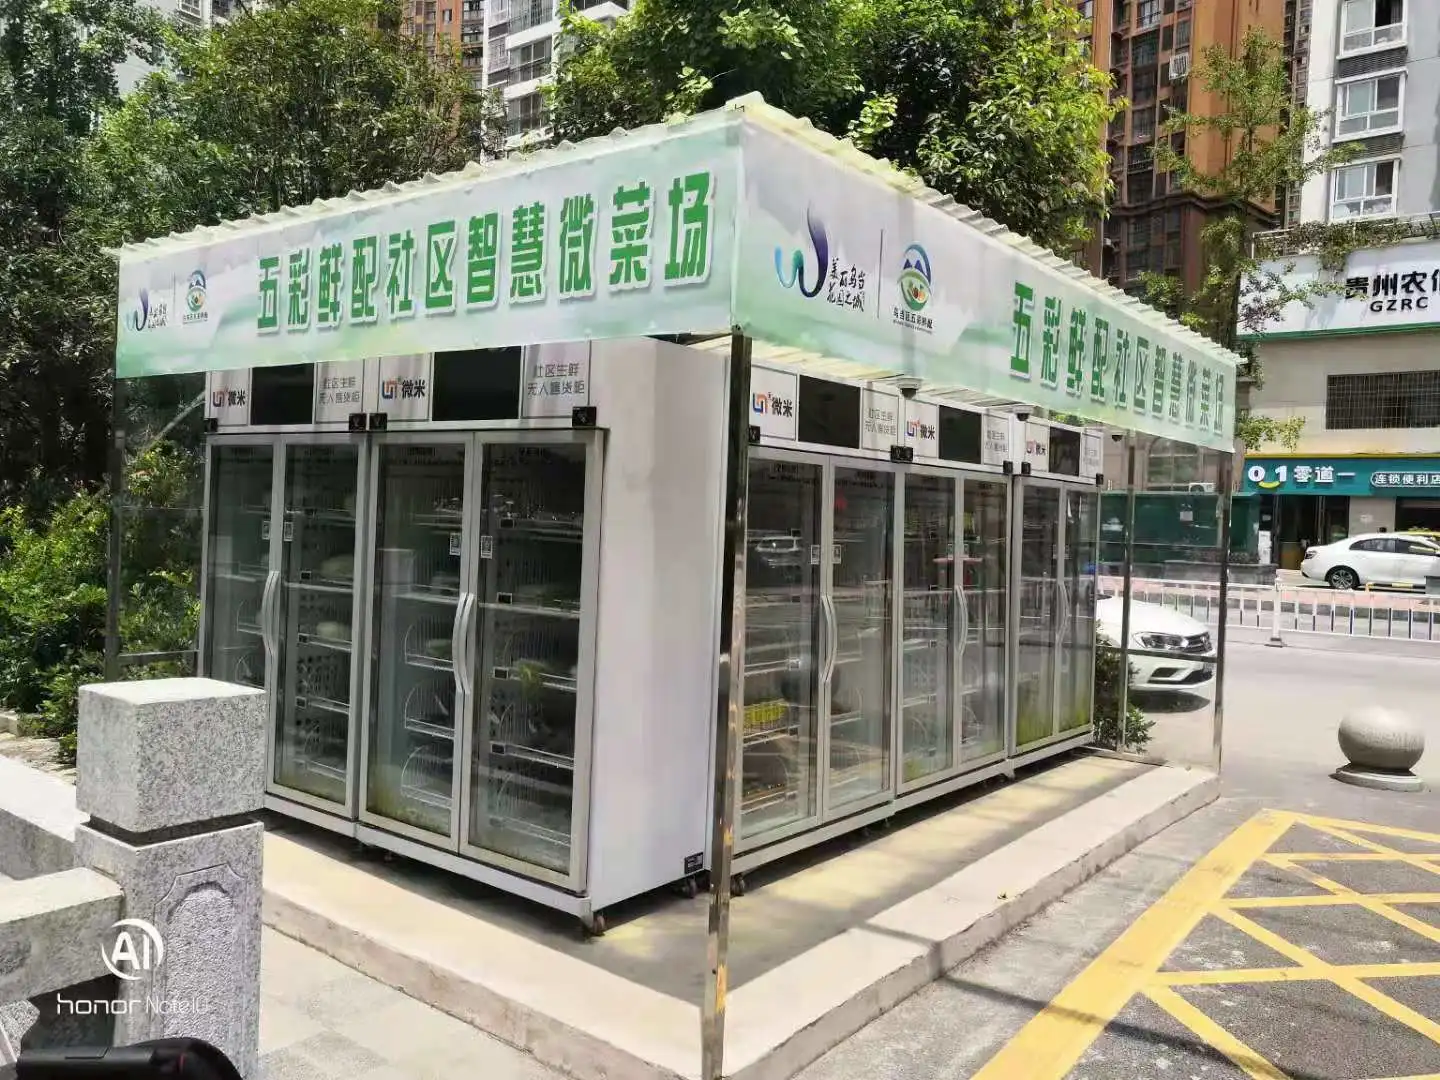 outdoor smart fridge vending machine